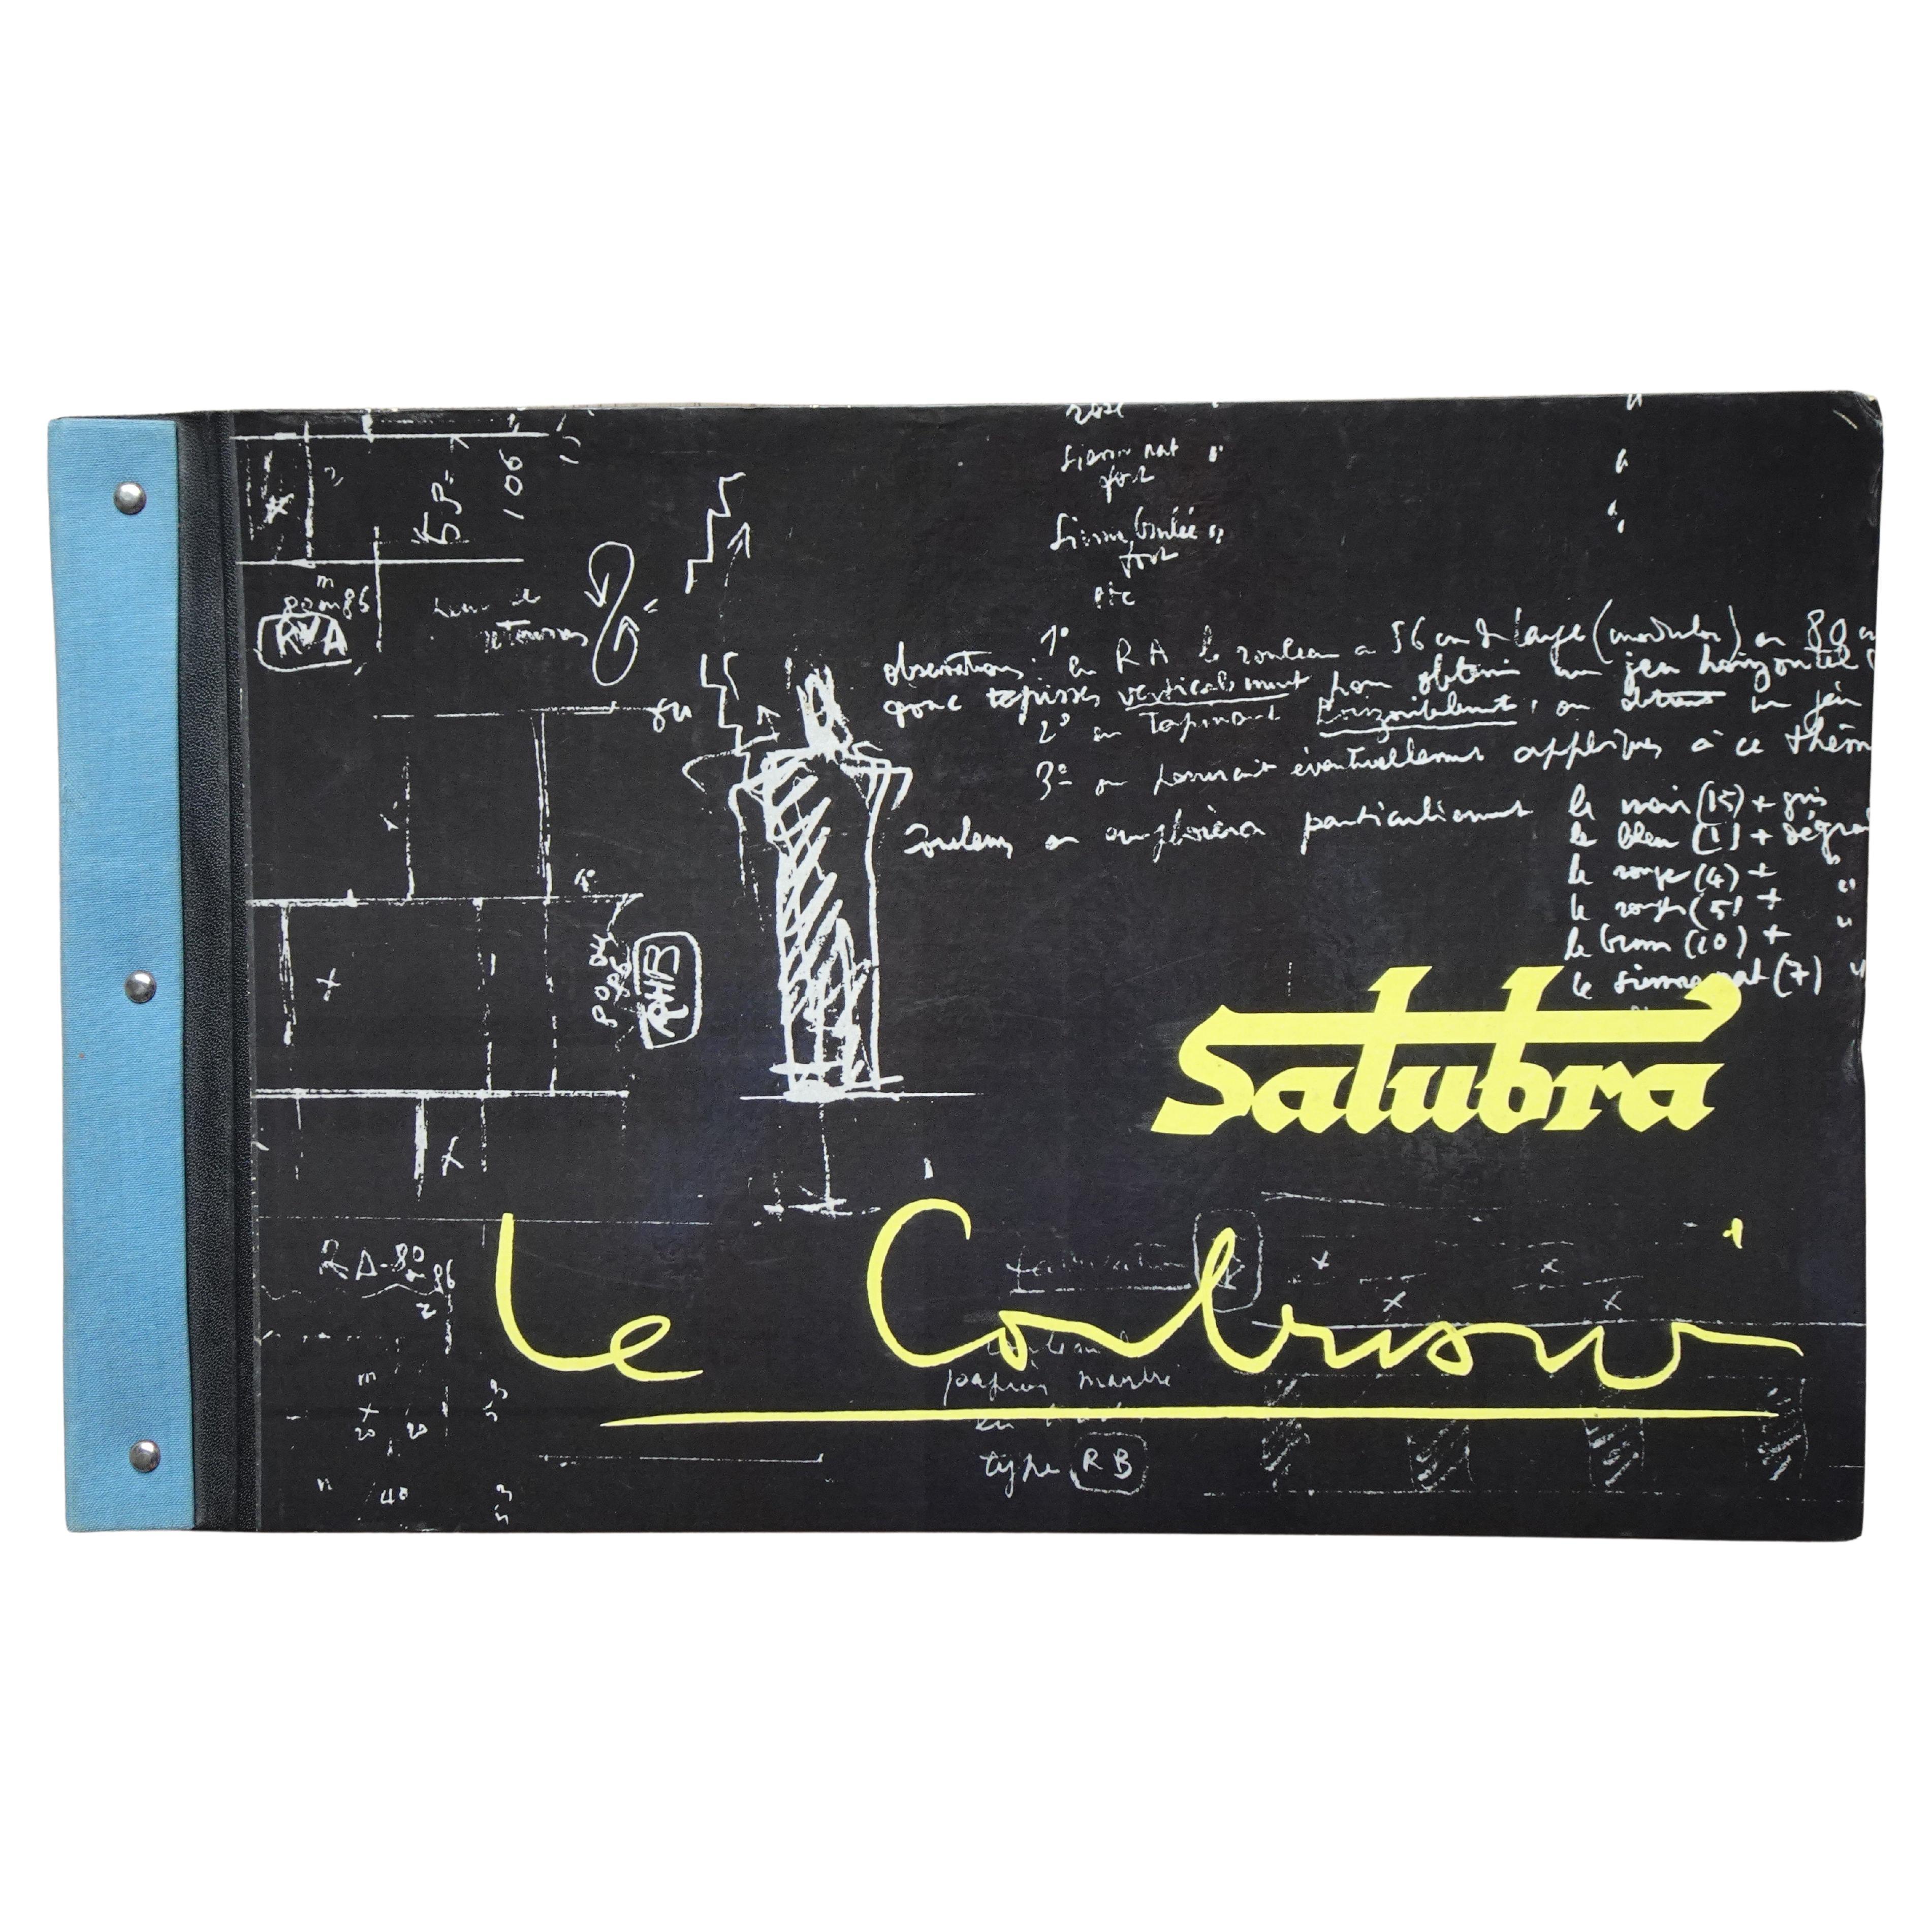 Deuxième édition du livre papier peint Salubra de Le Corbusier 1959 en vente